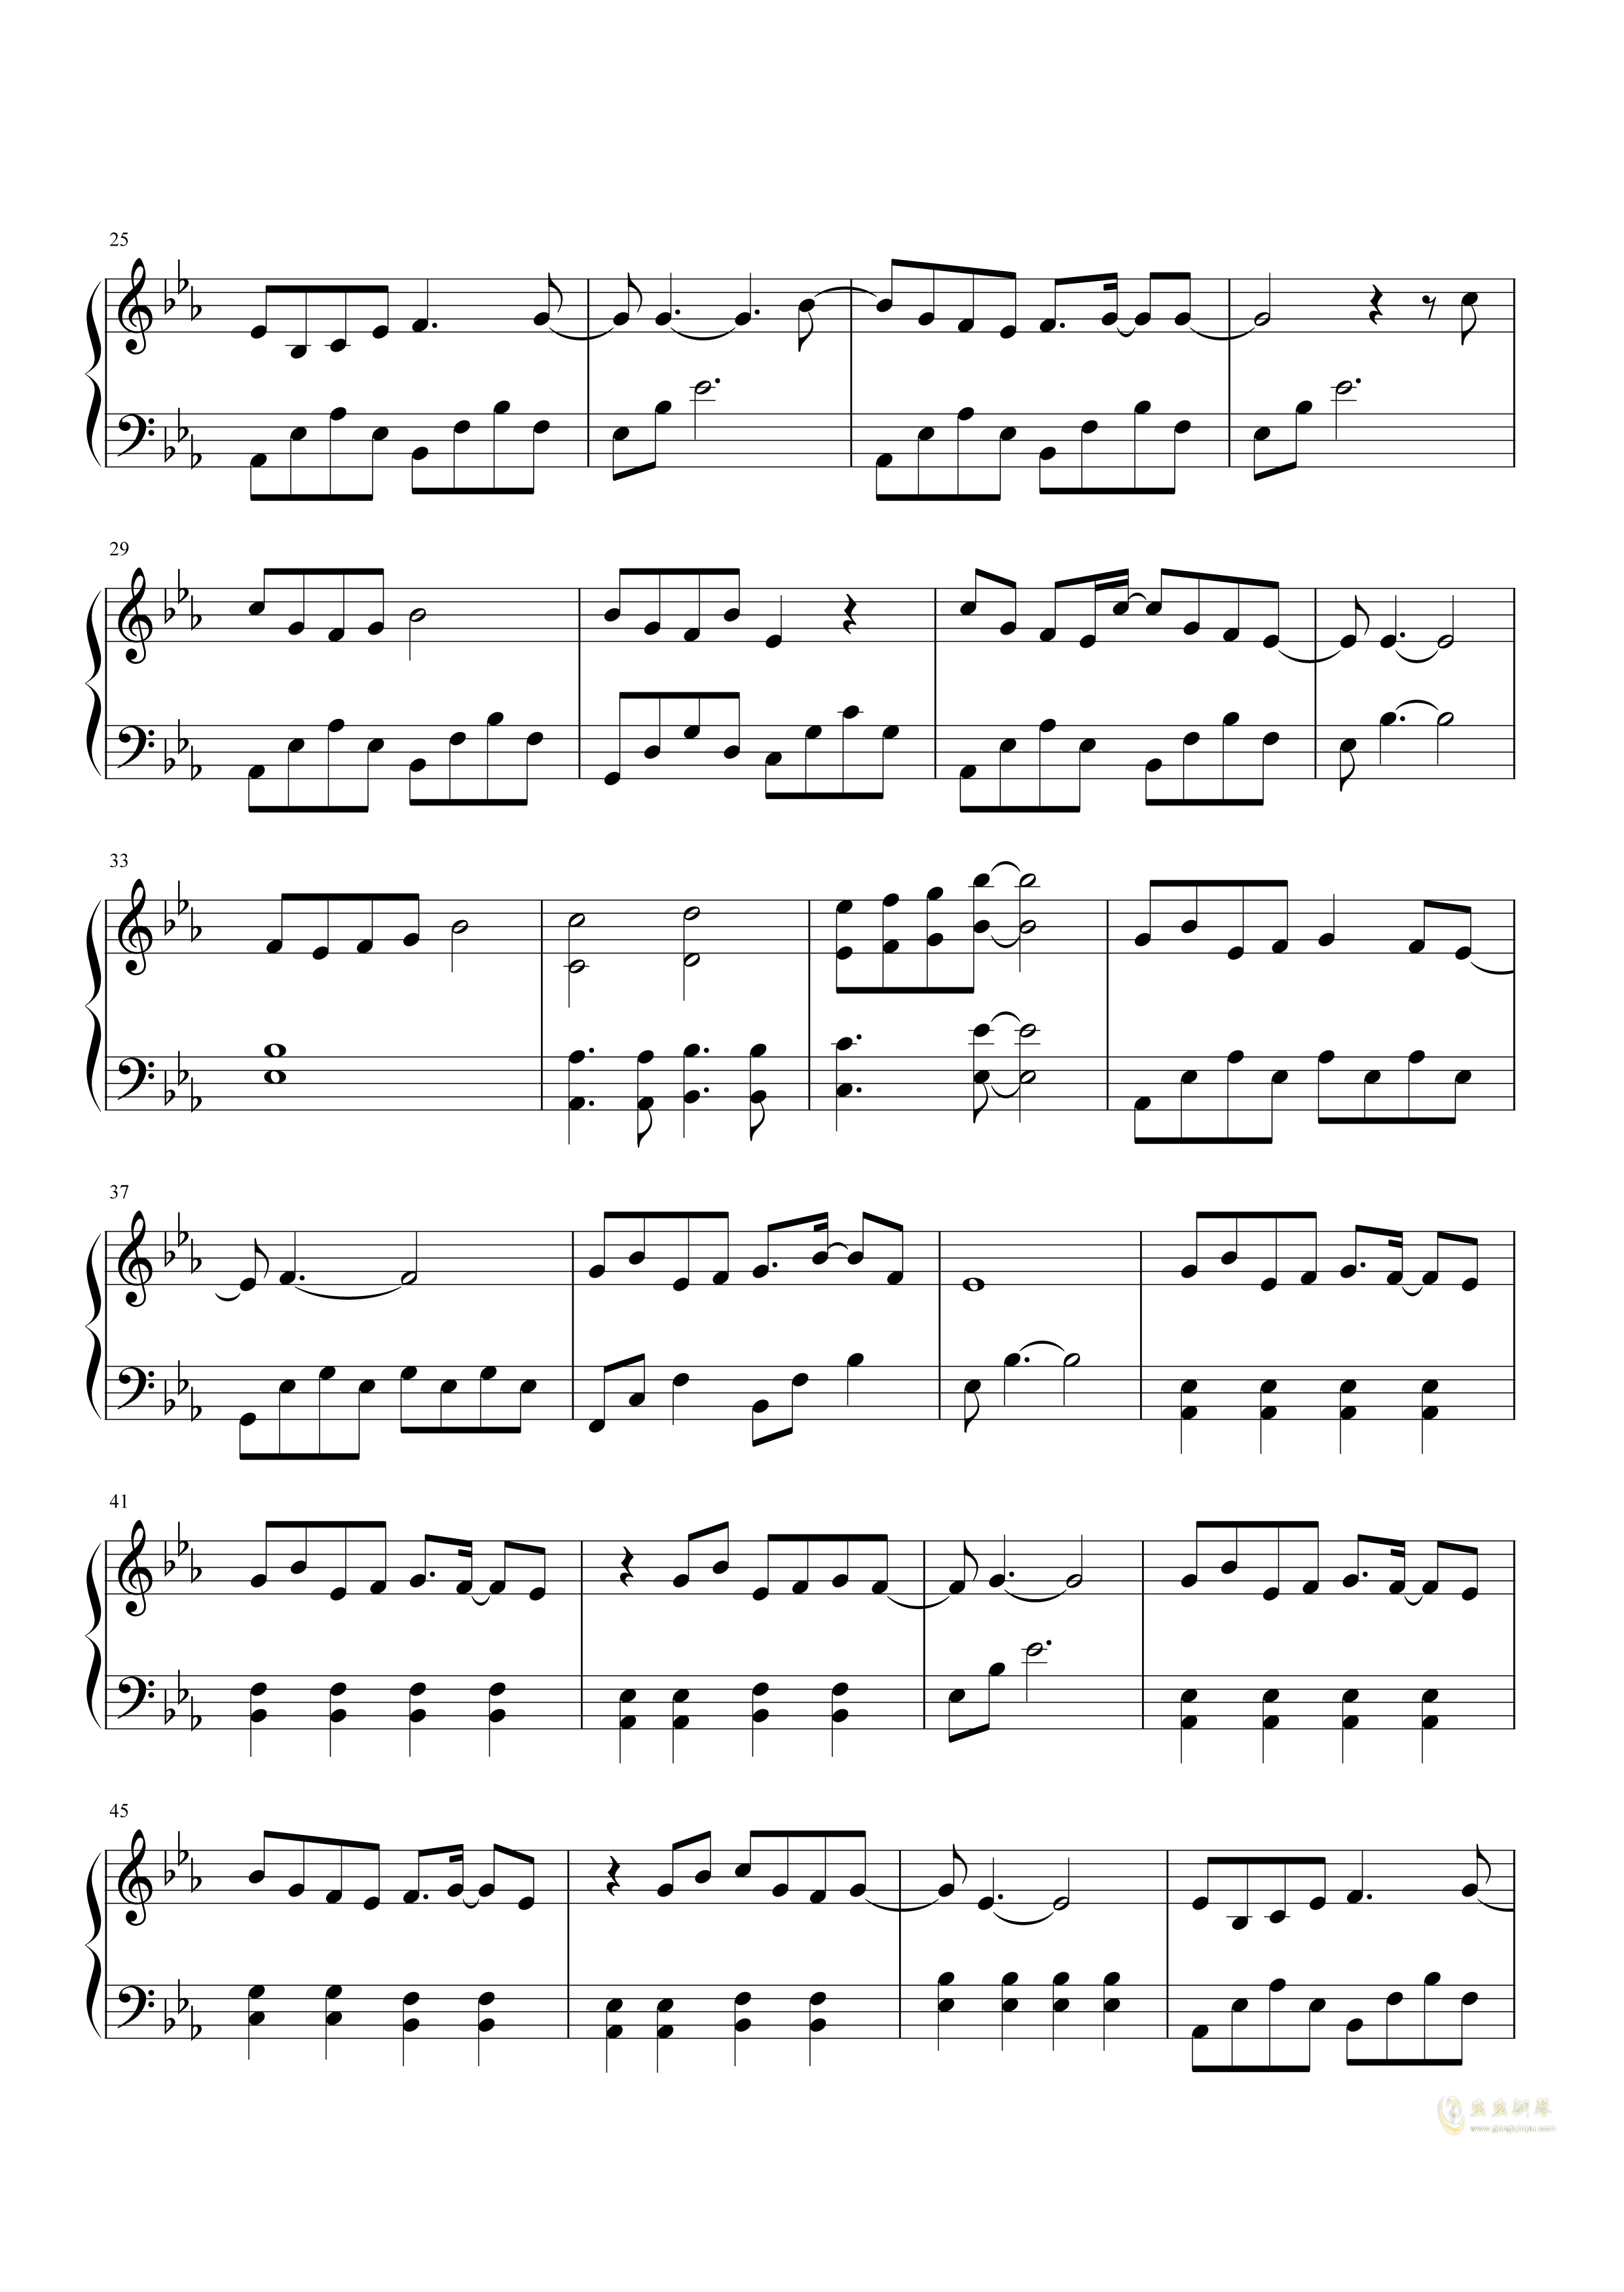 简化版《天若有情》钢琴谱 - 初学者最易上手 - 云狗蛋带指法钢琴谱子 - 钢琴简谱